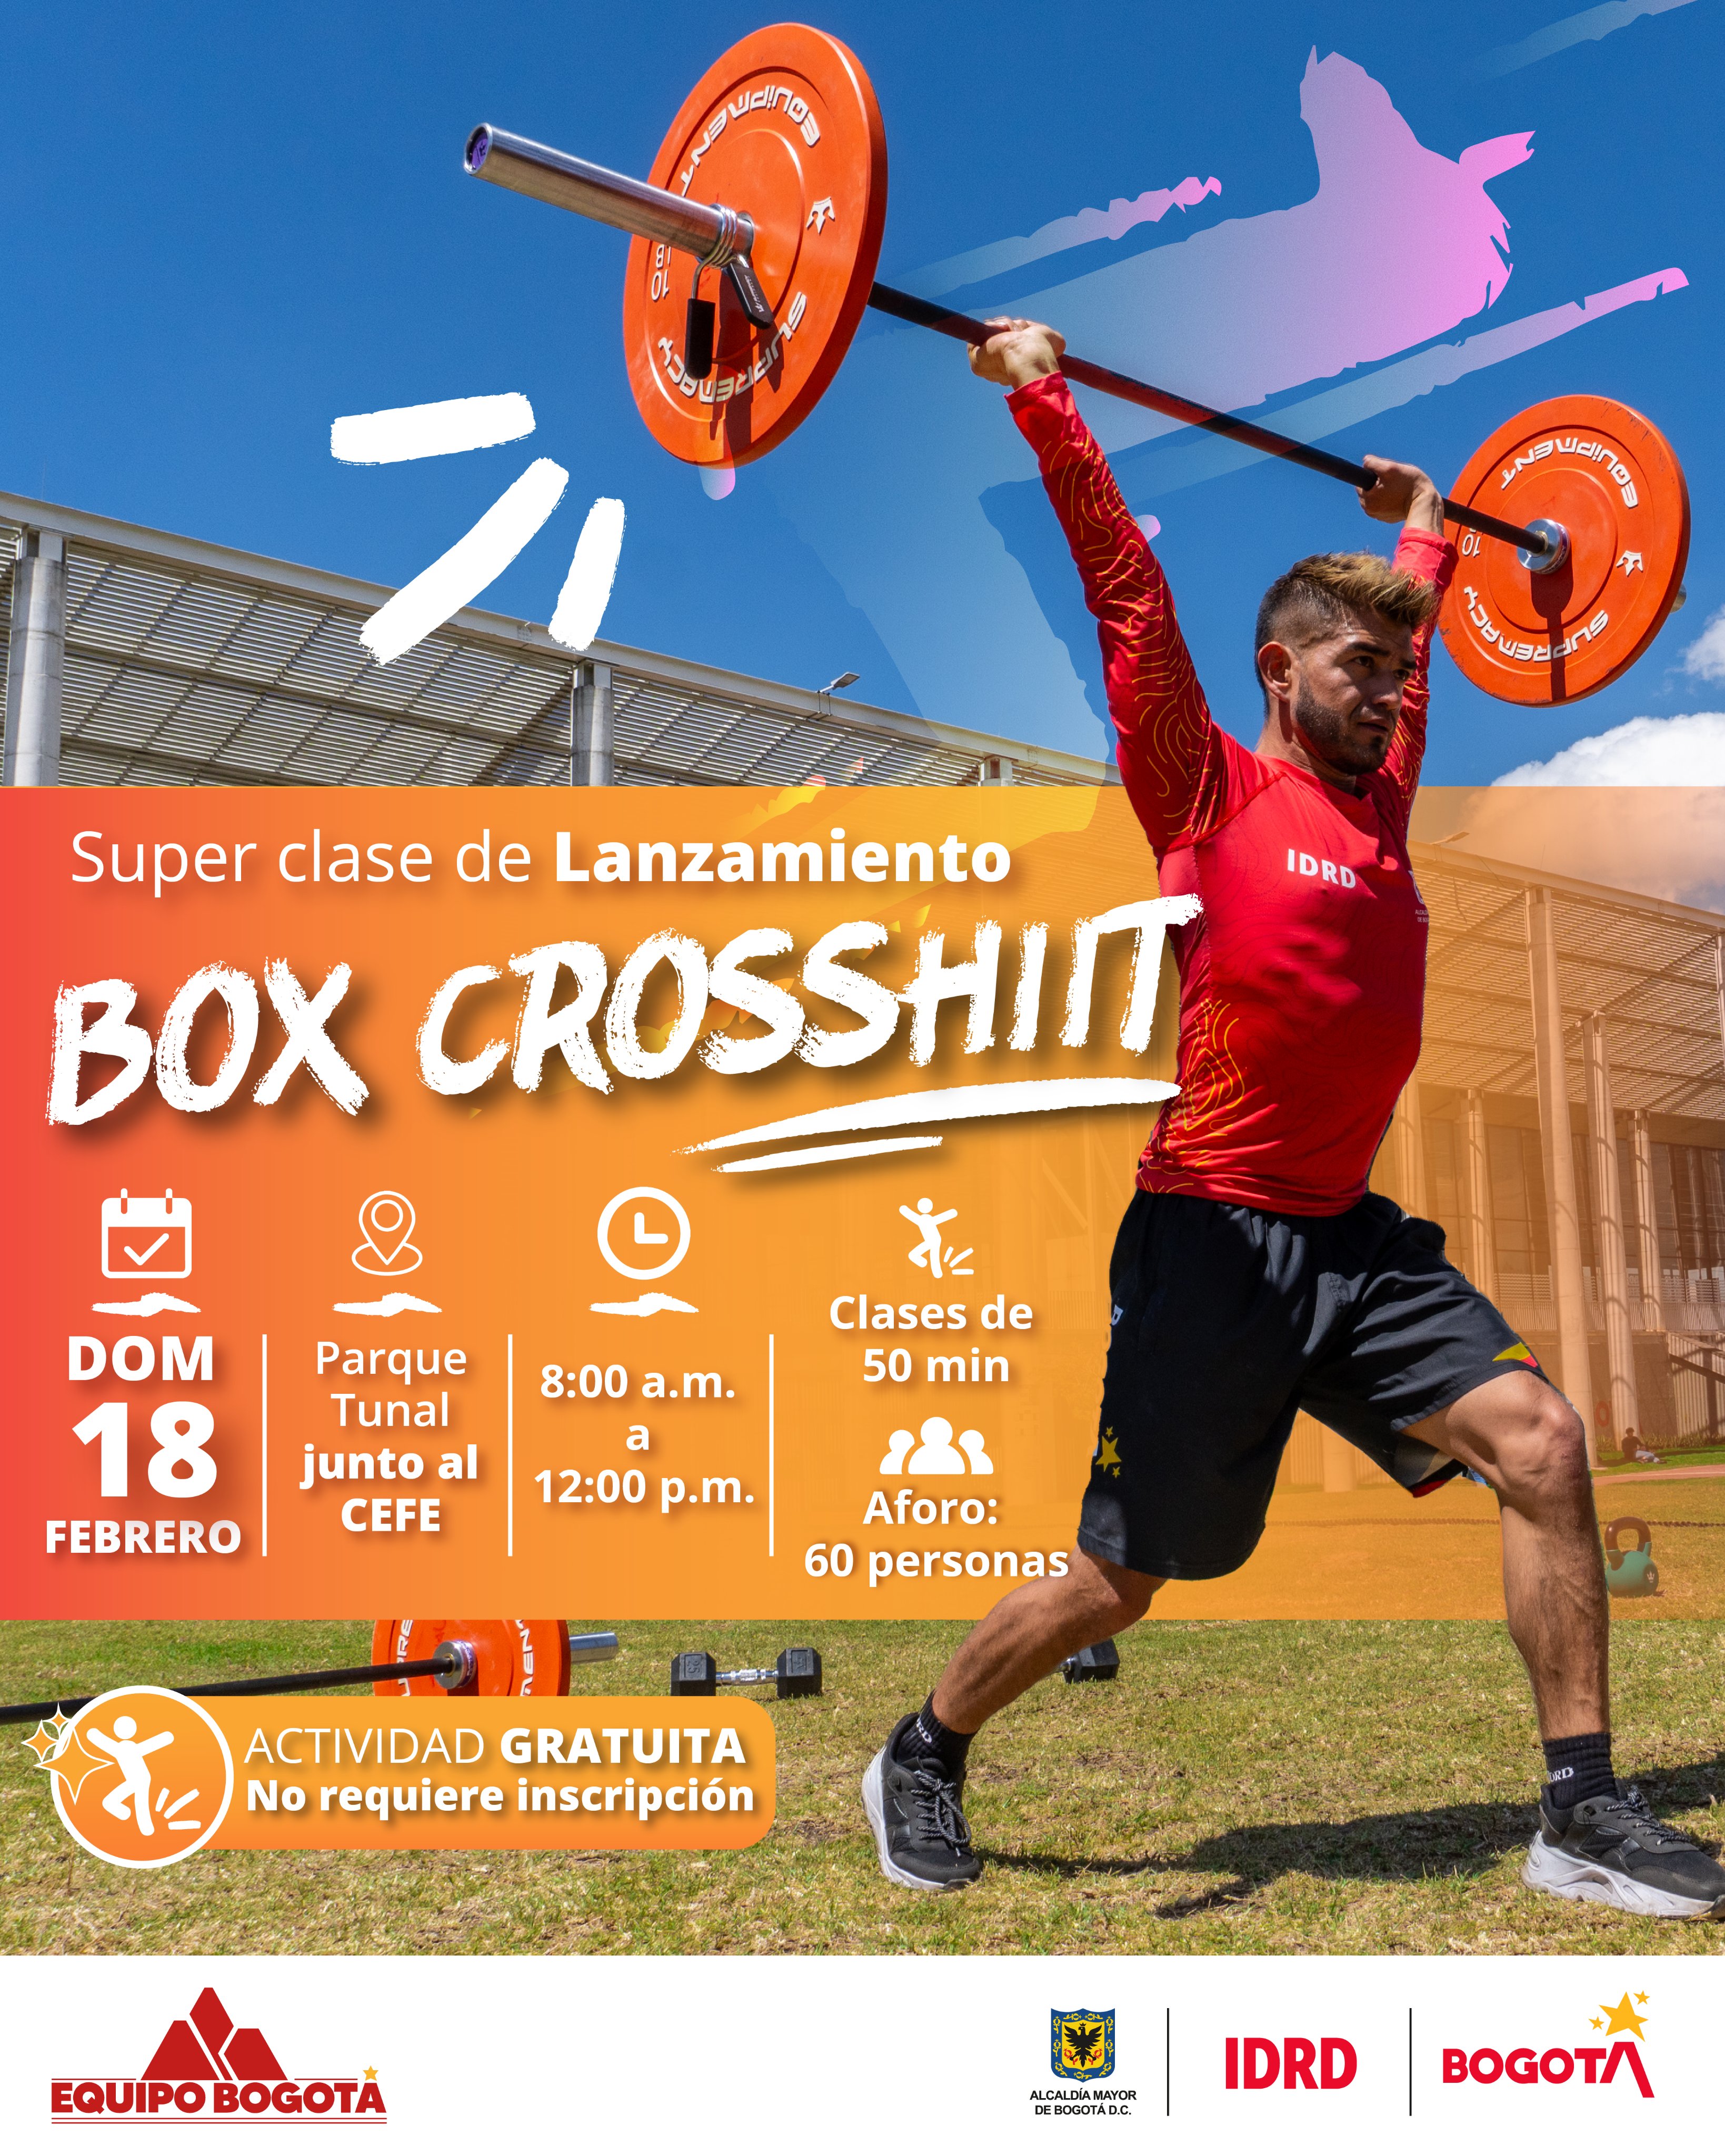 Febrero 18: lanzamiento de los Box de CrossHiit en Bogotá 